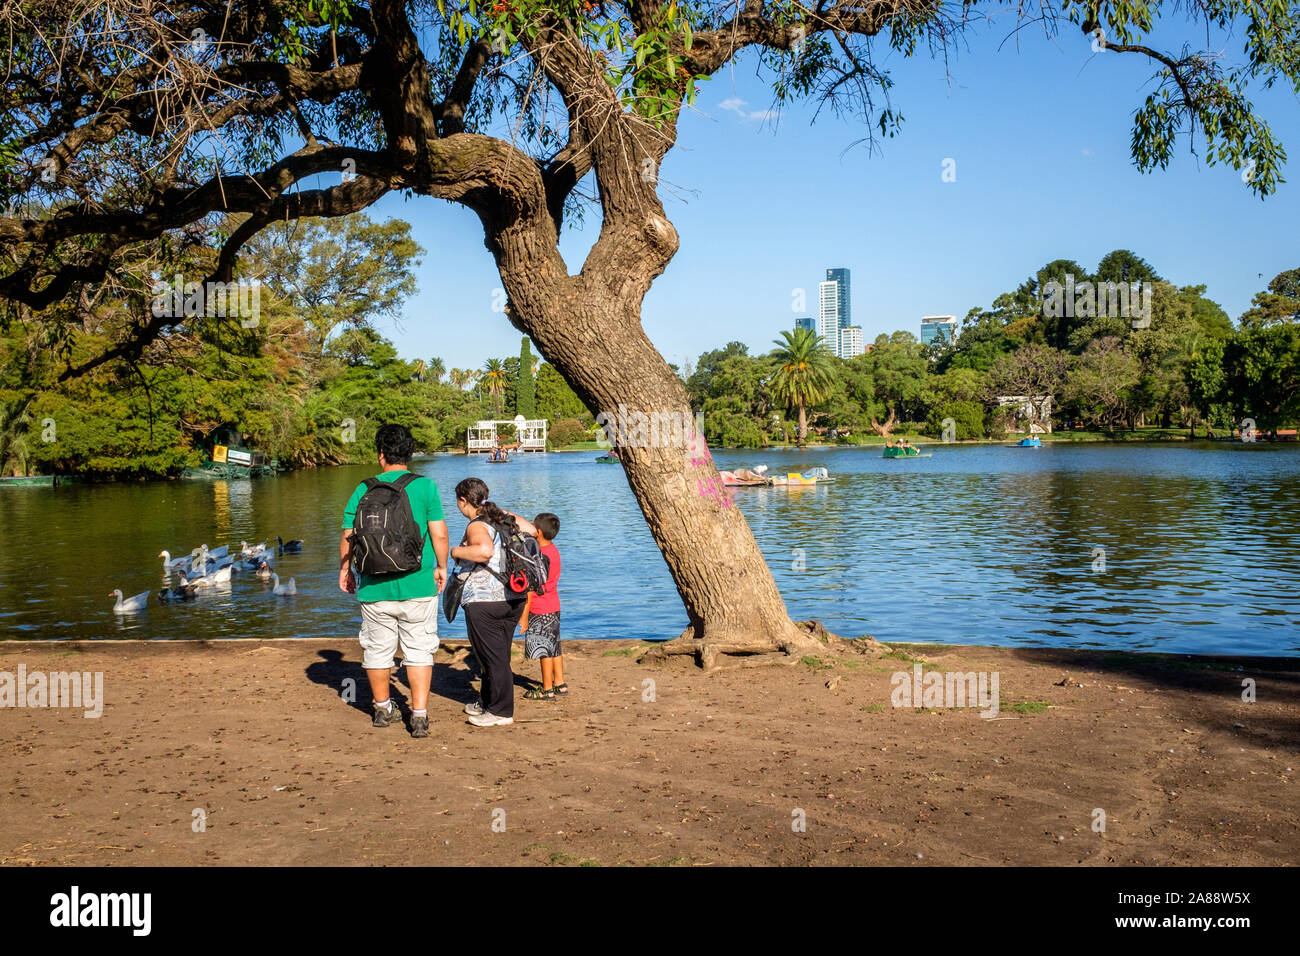 L'ARGENTINE, Buenos Aires. Parque Tres de Febrero, populairement connu comme bois de Palermo (Palermo Woods), est un parc urbain d'environ 400 hectares Banque D'Images